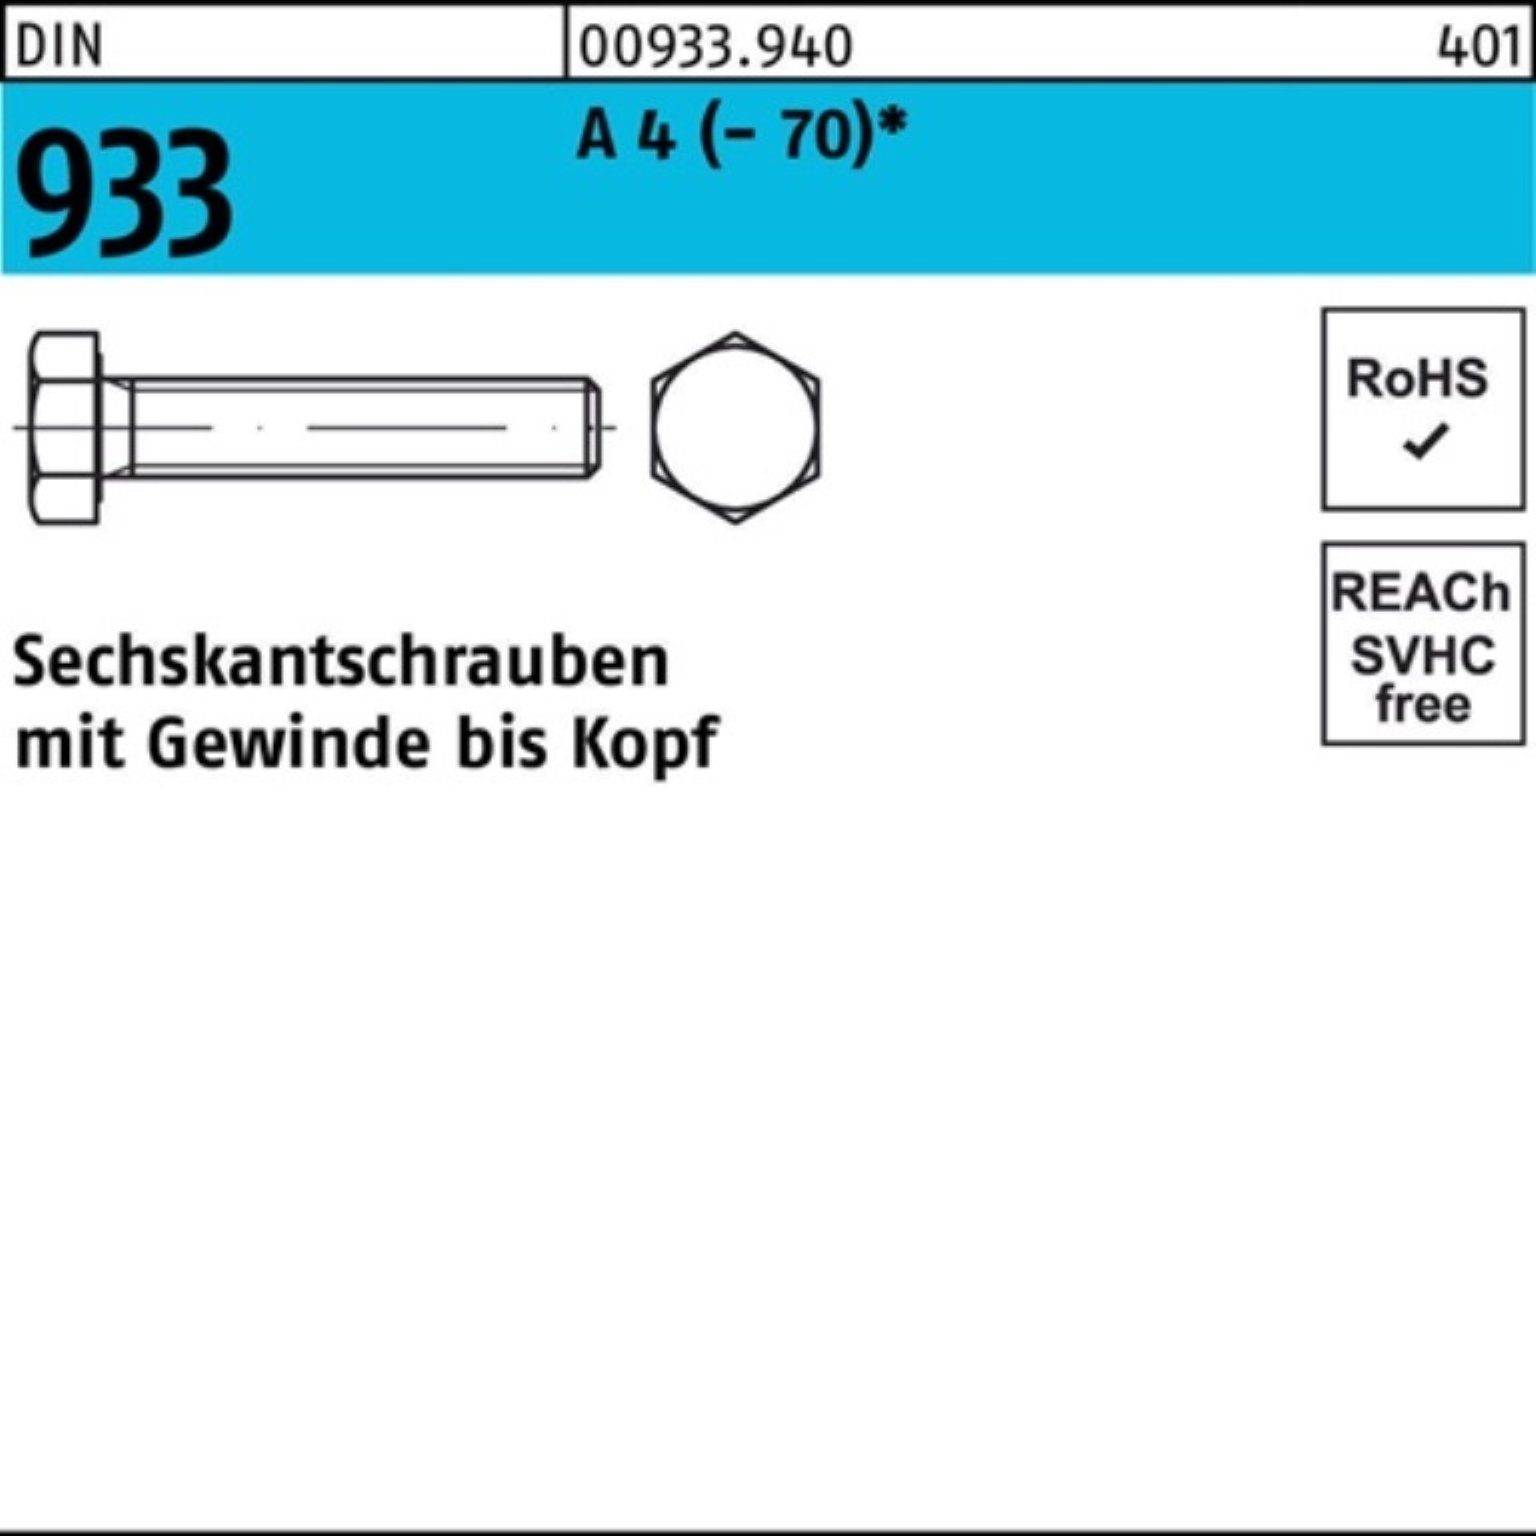 DIN (70) Sechskantschraube 933 VG Sechskantschraube Pack D 45 50 M12x Reyher A 4 100er Stück